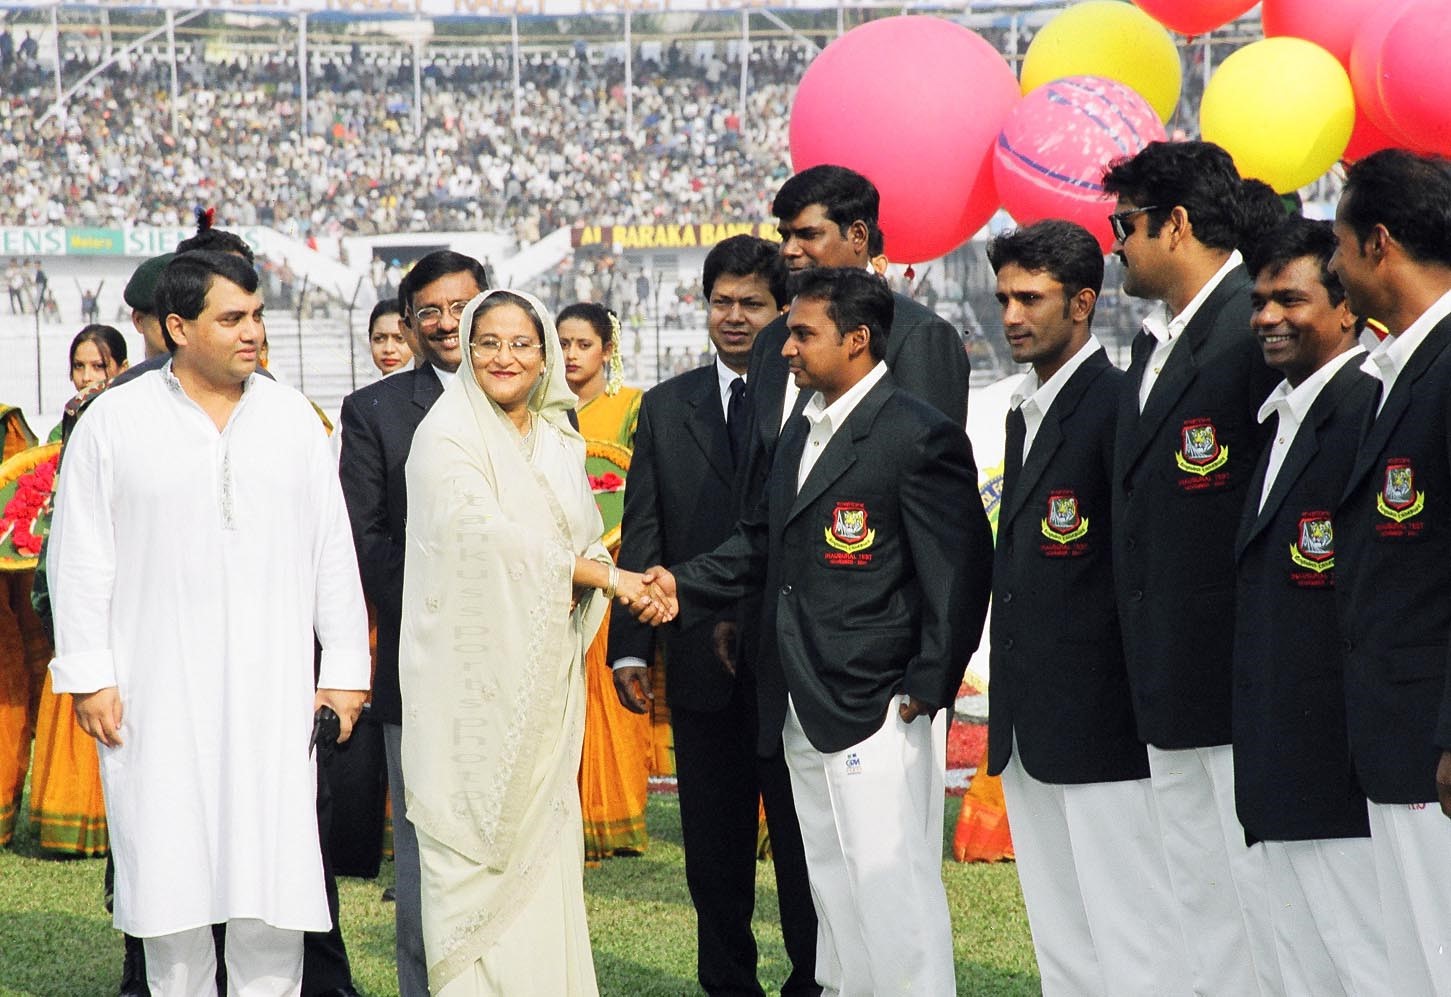 অভিষেক টেস্ট শুরুর আগে প্রধানমন্ত্রী শেখ হাসিনার সঙ্গে পরিচয়পর্ব। ছবি: শা. হ. টেংকু